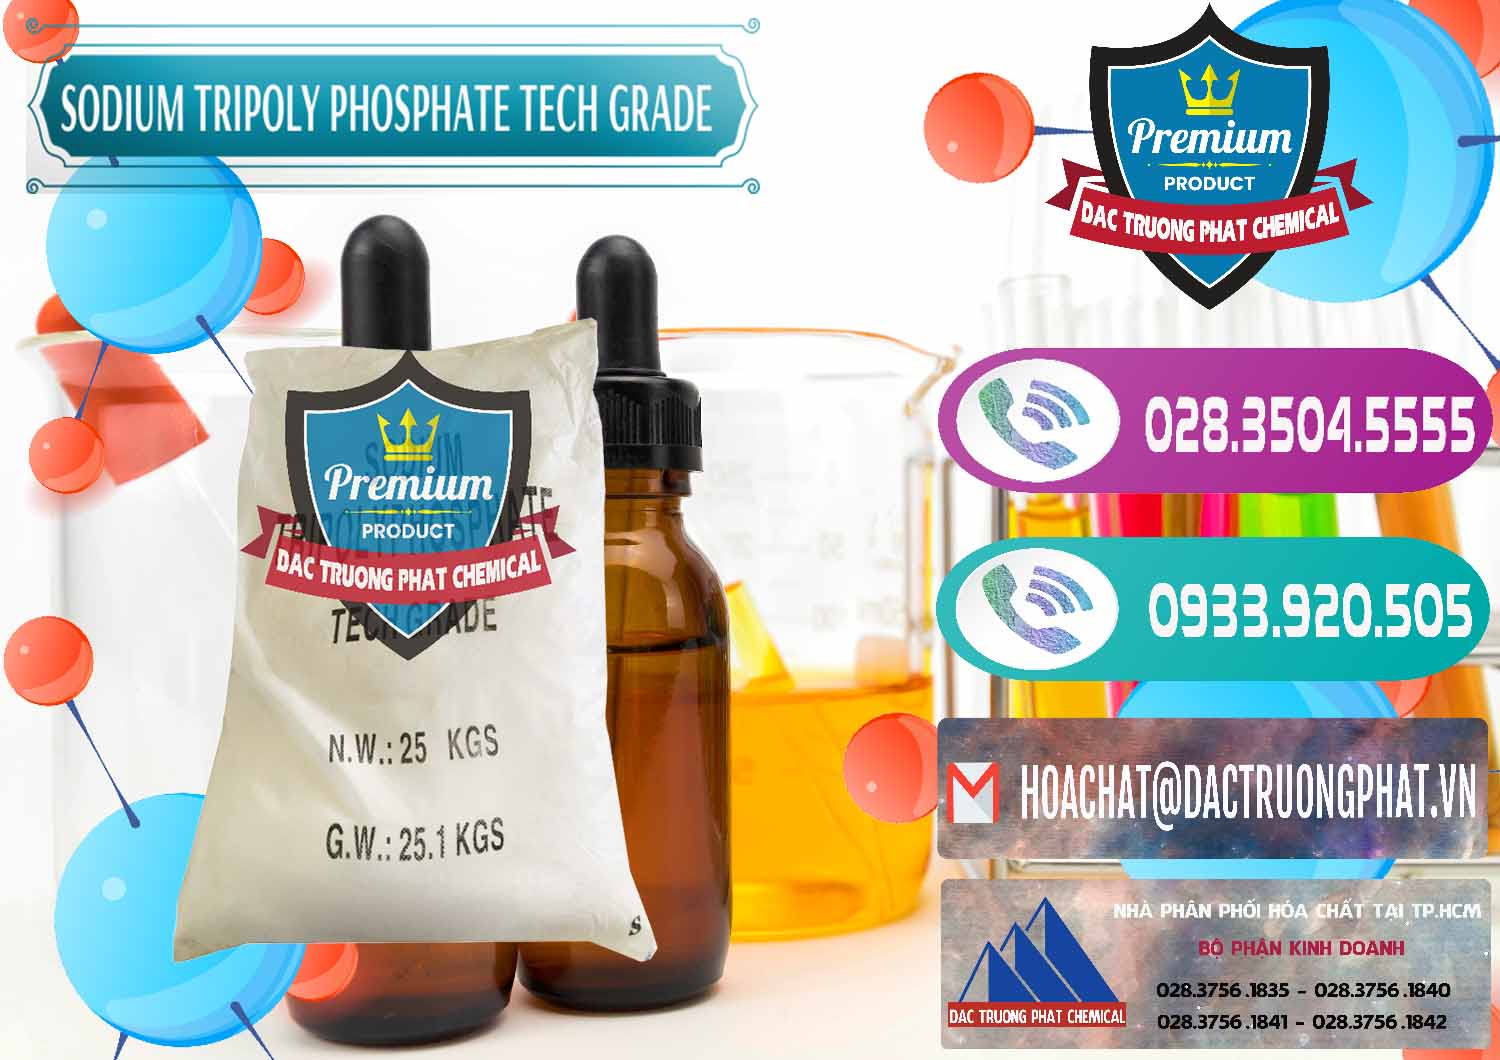 Đơn vị chuyên cung ứng - bán Sodium Tripoly Phosphate - STPP Tech Grade Trung Quốc China - 0453 - Chuyên cung ứng và phân phối hóa chất tại TP.HCM - hoachatxulynuoc.com